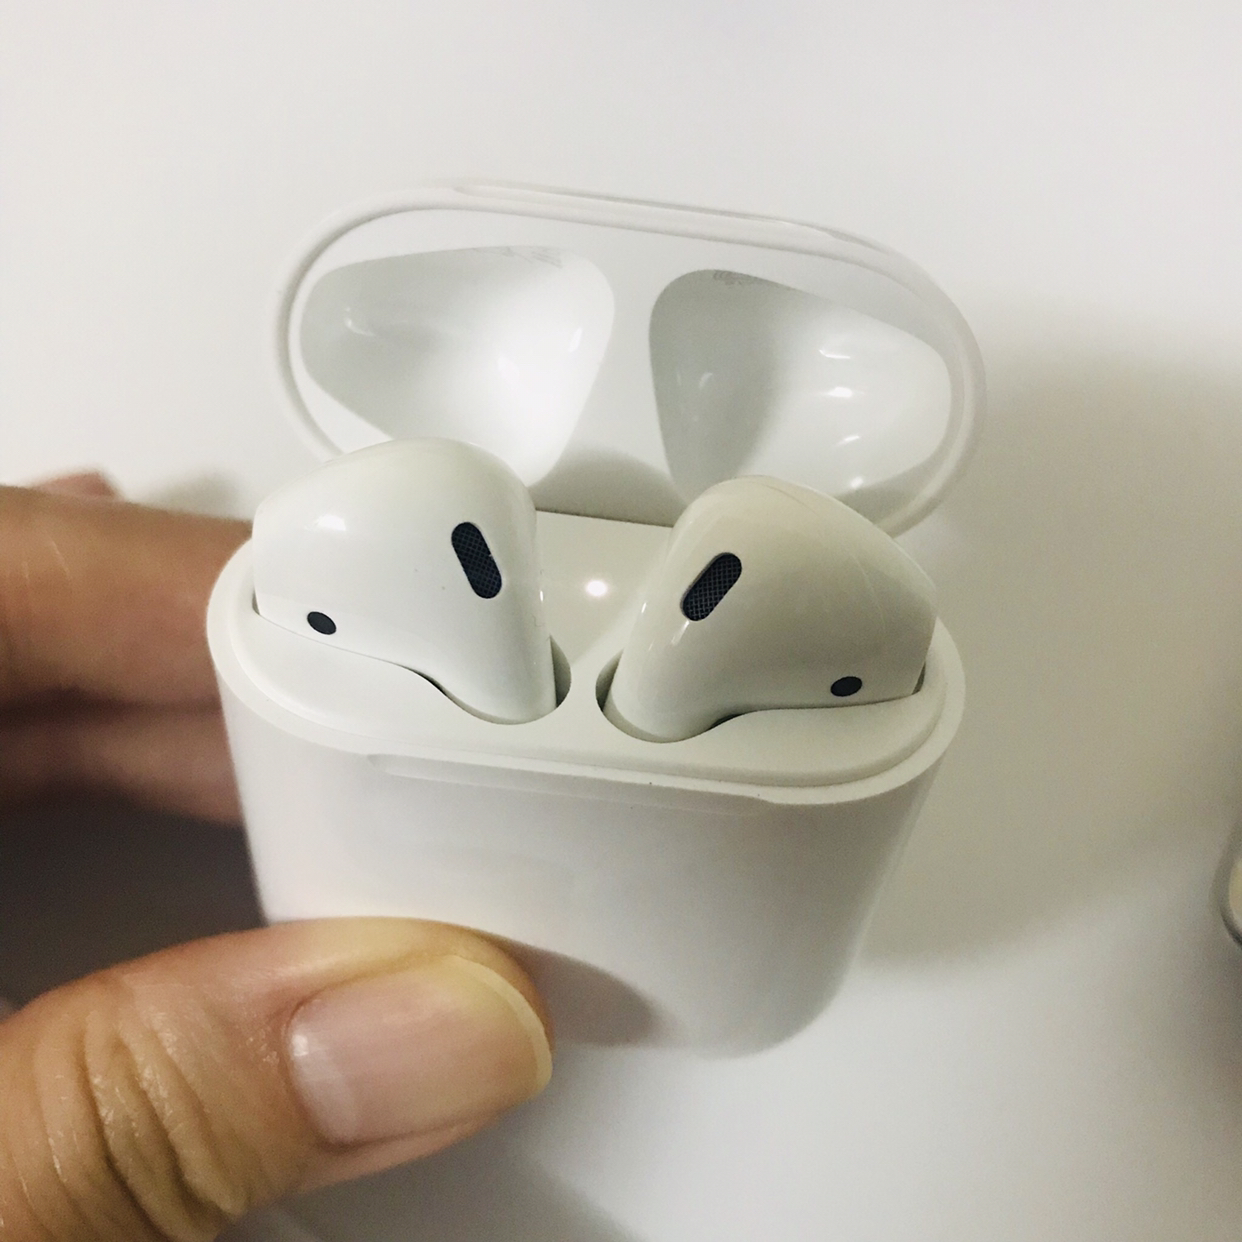 【秒连无障碍】苹果apple airpods2 新款二代入耳式无线蓝牙耳机 配有